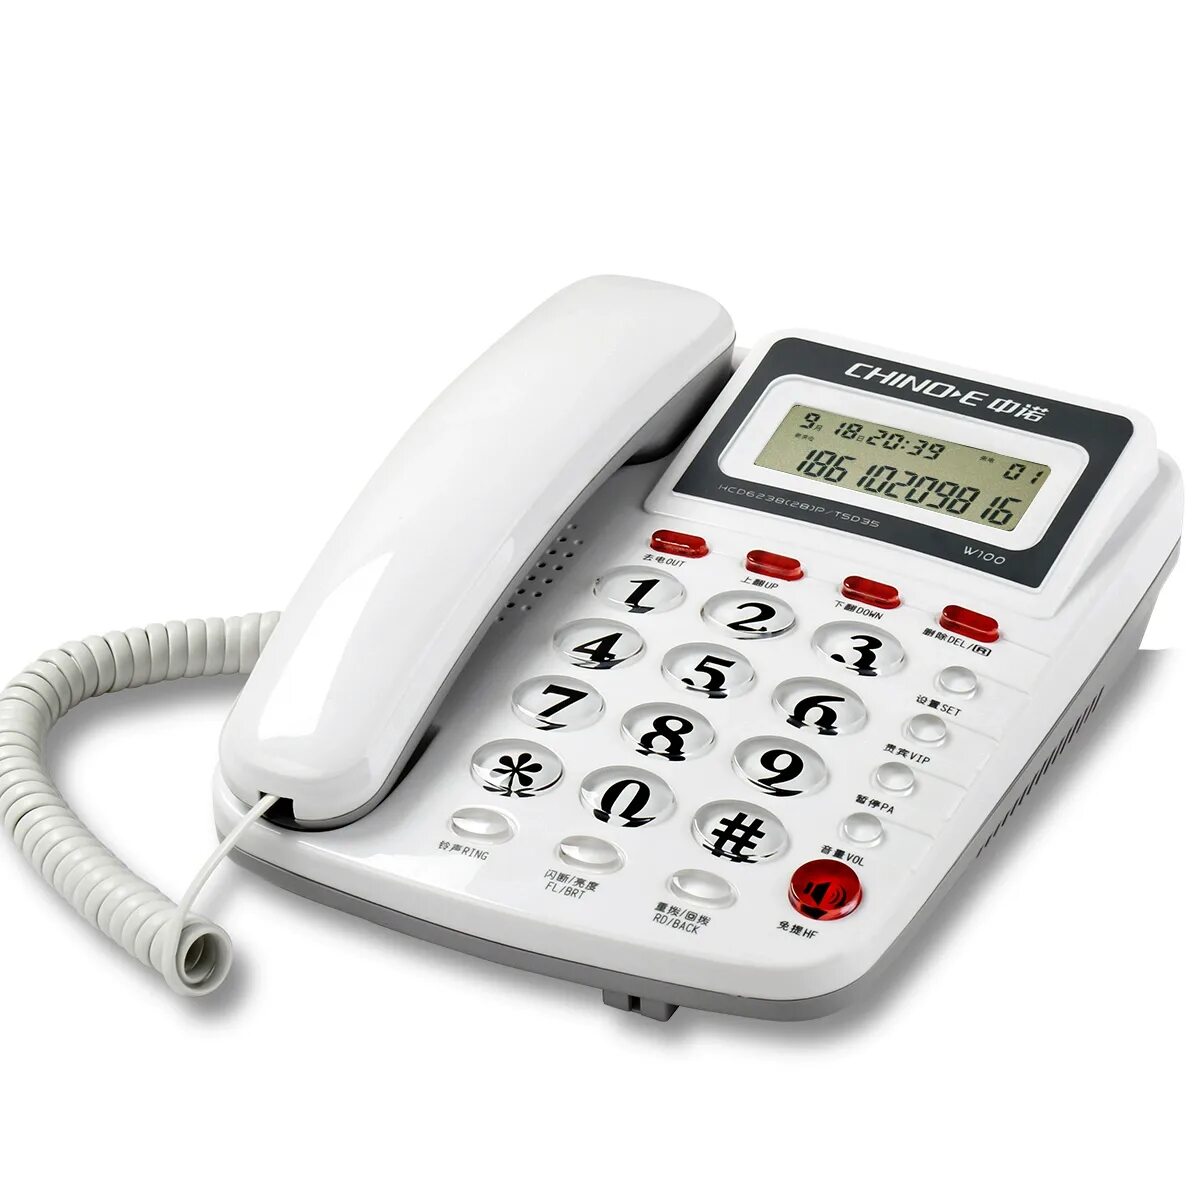 Стационарный телефон новосибирск. Стационарный телефон Intego kxt210. Проводной стационарный телефон буг202. Стационарный телефон Unitel City. Стационарный телефон model 8080.